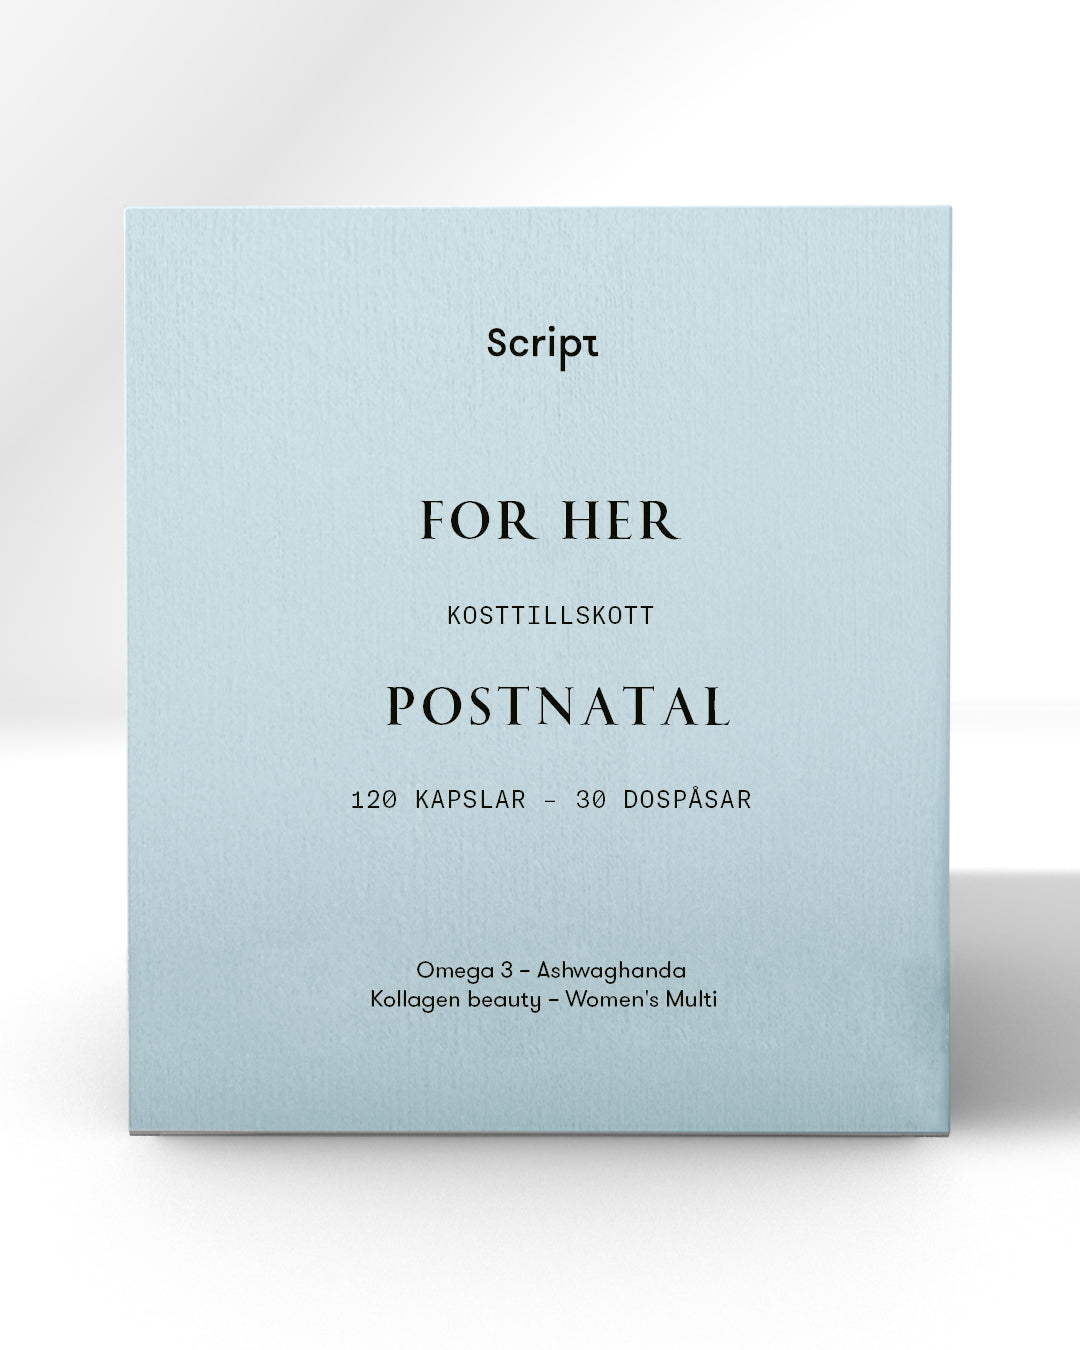 For Her Postnatal Kit - 30 dospåsar